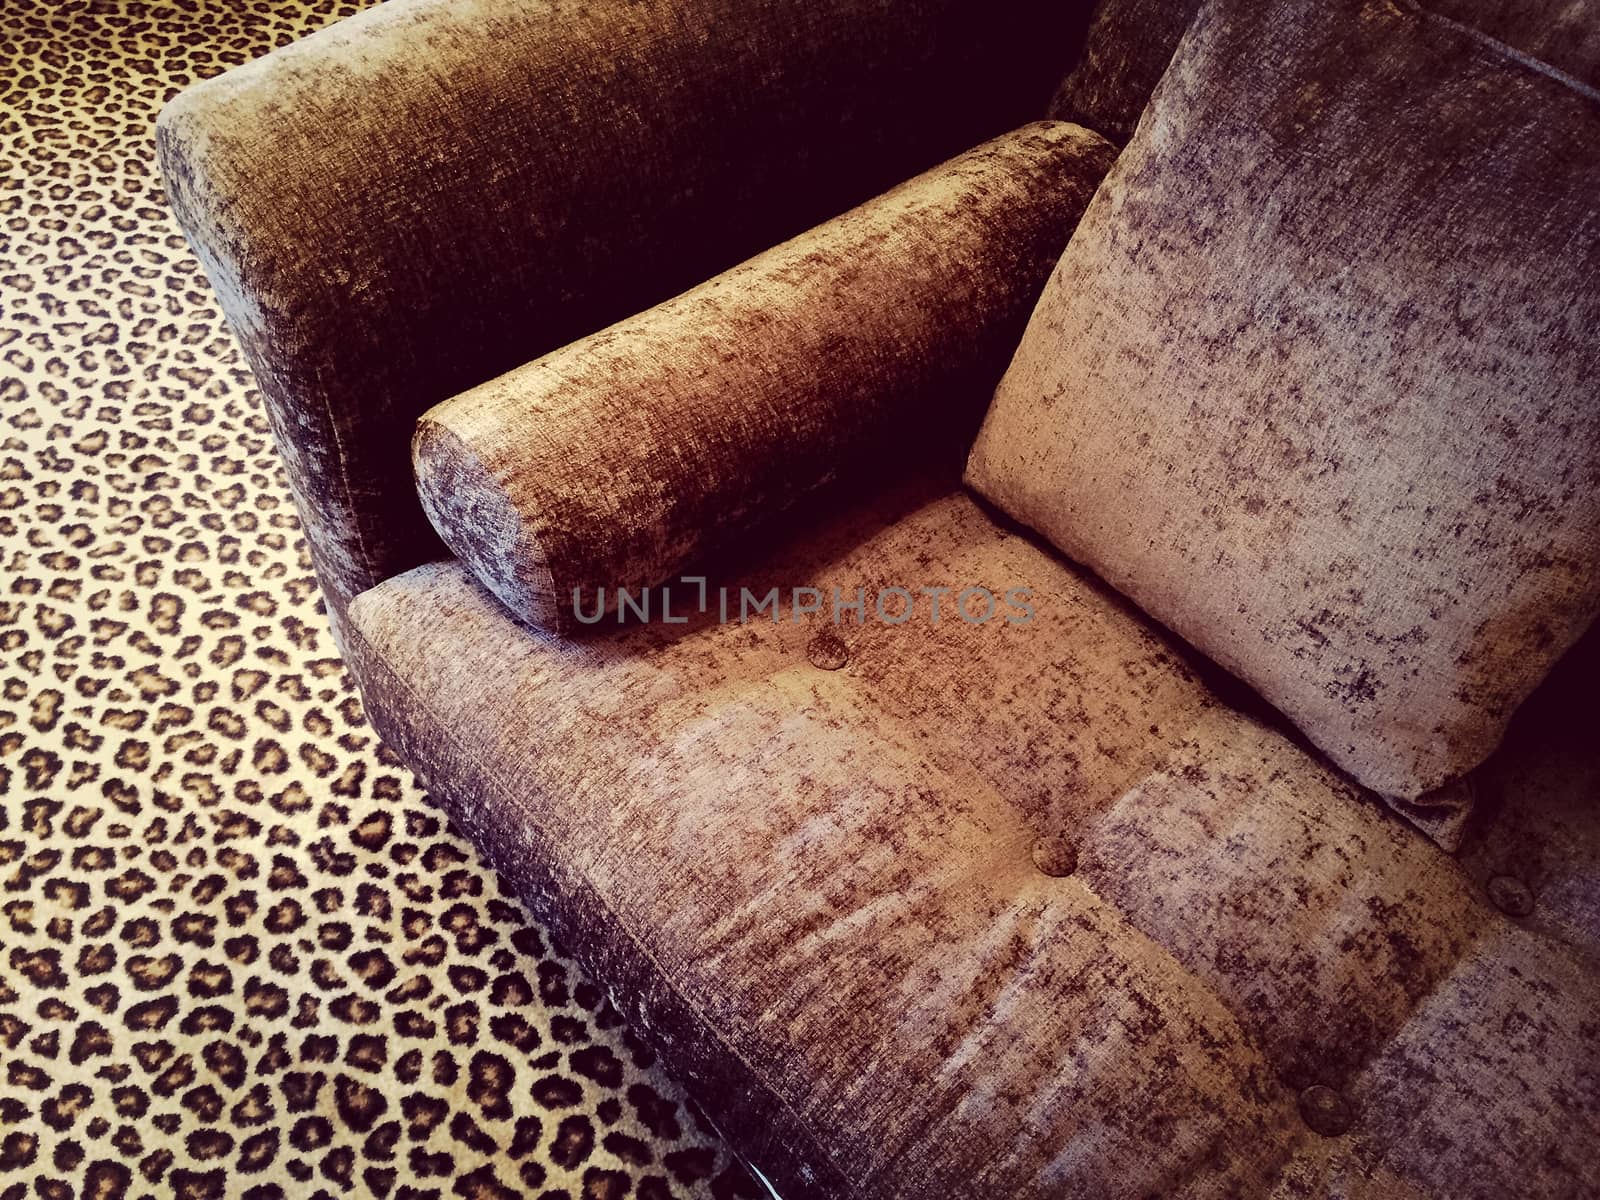 Velvet sofa on a fancy leopard carpet.